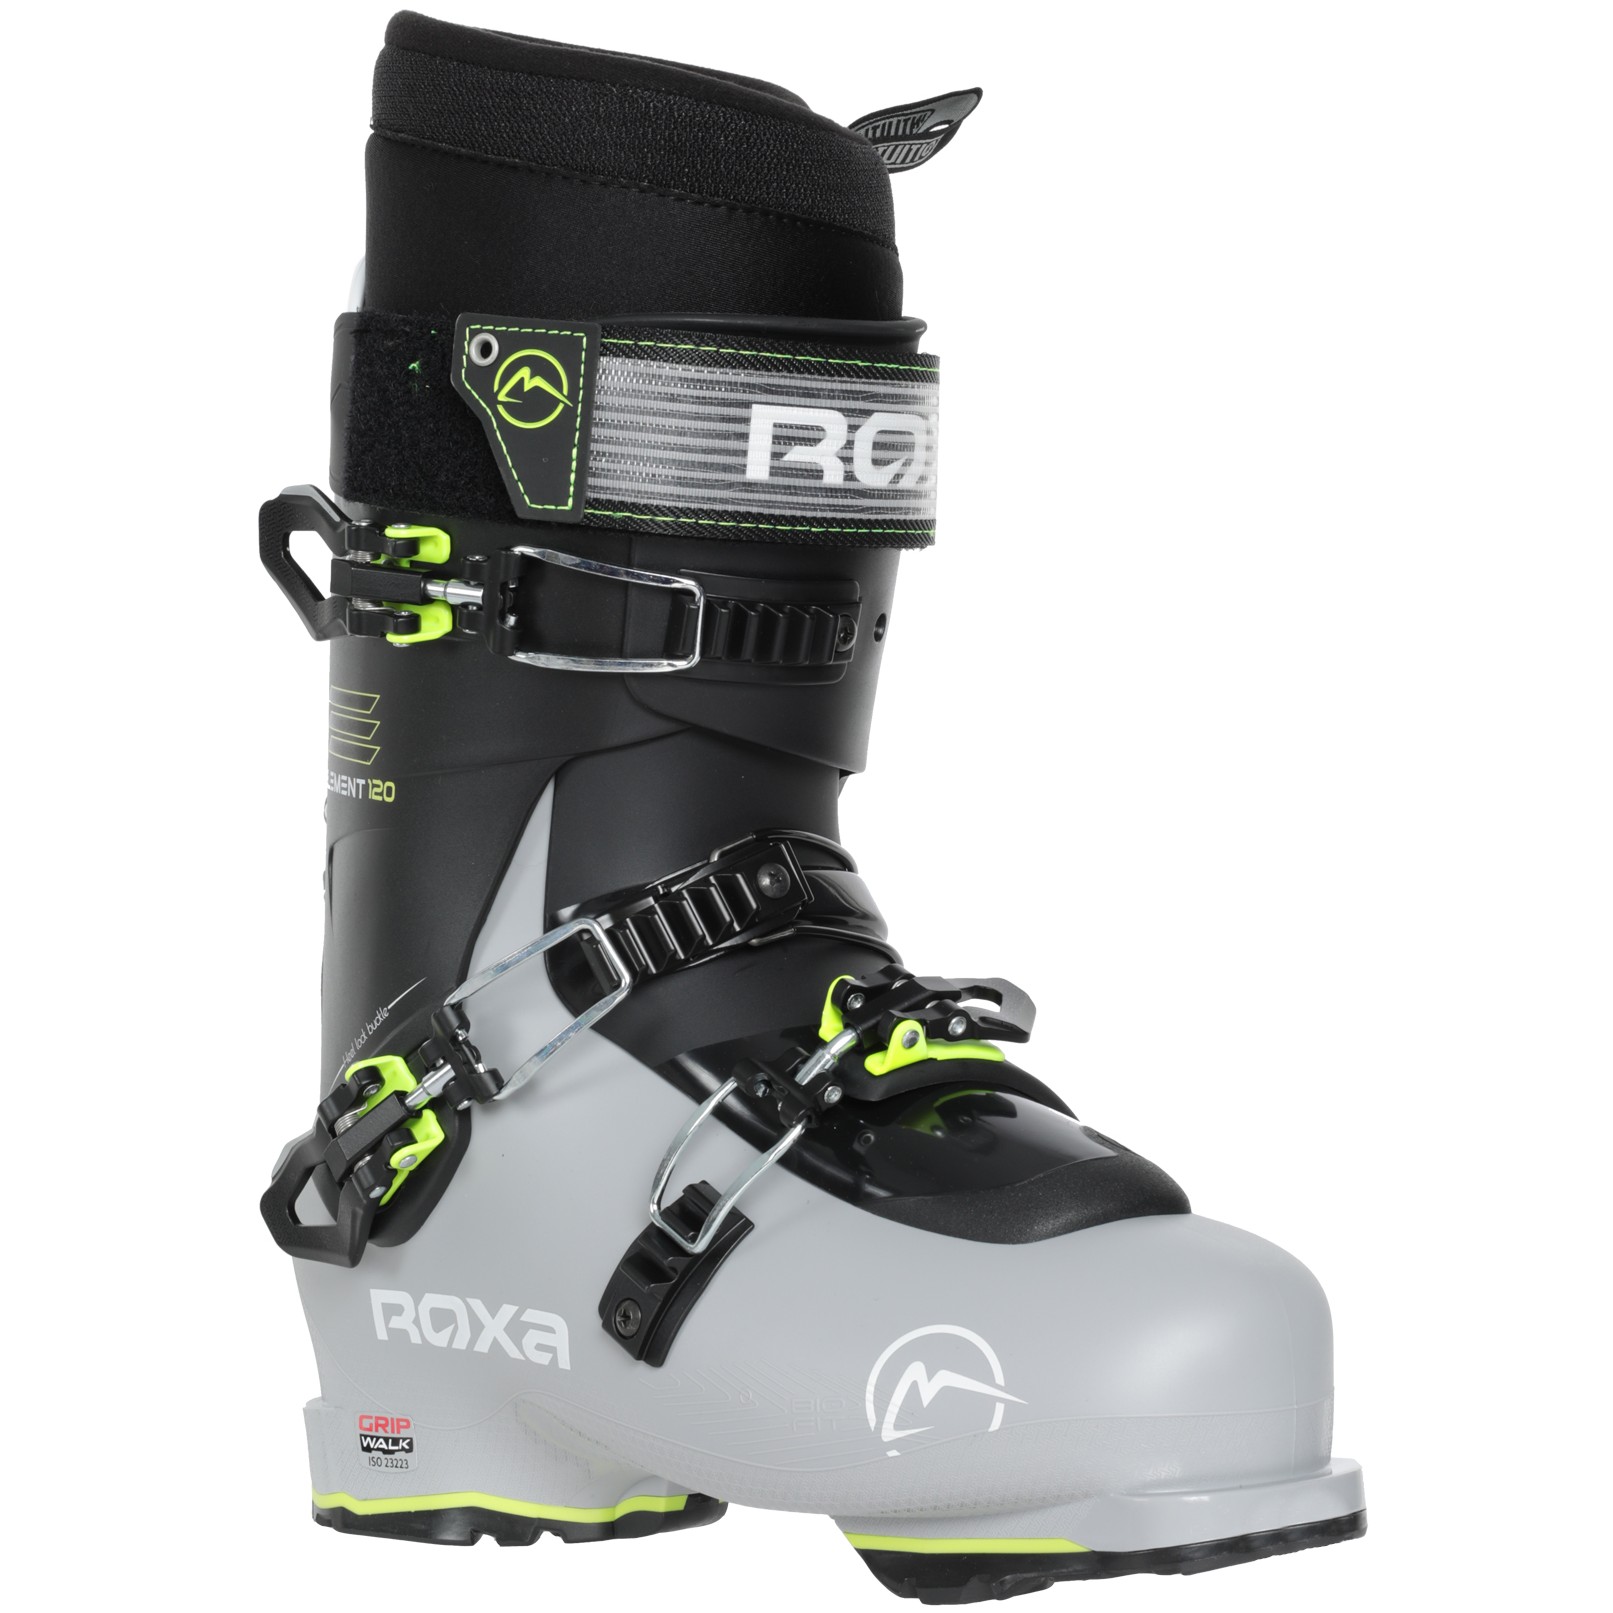 Roxa Element 120 IR Grip Walk Ski Boots